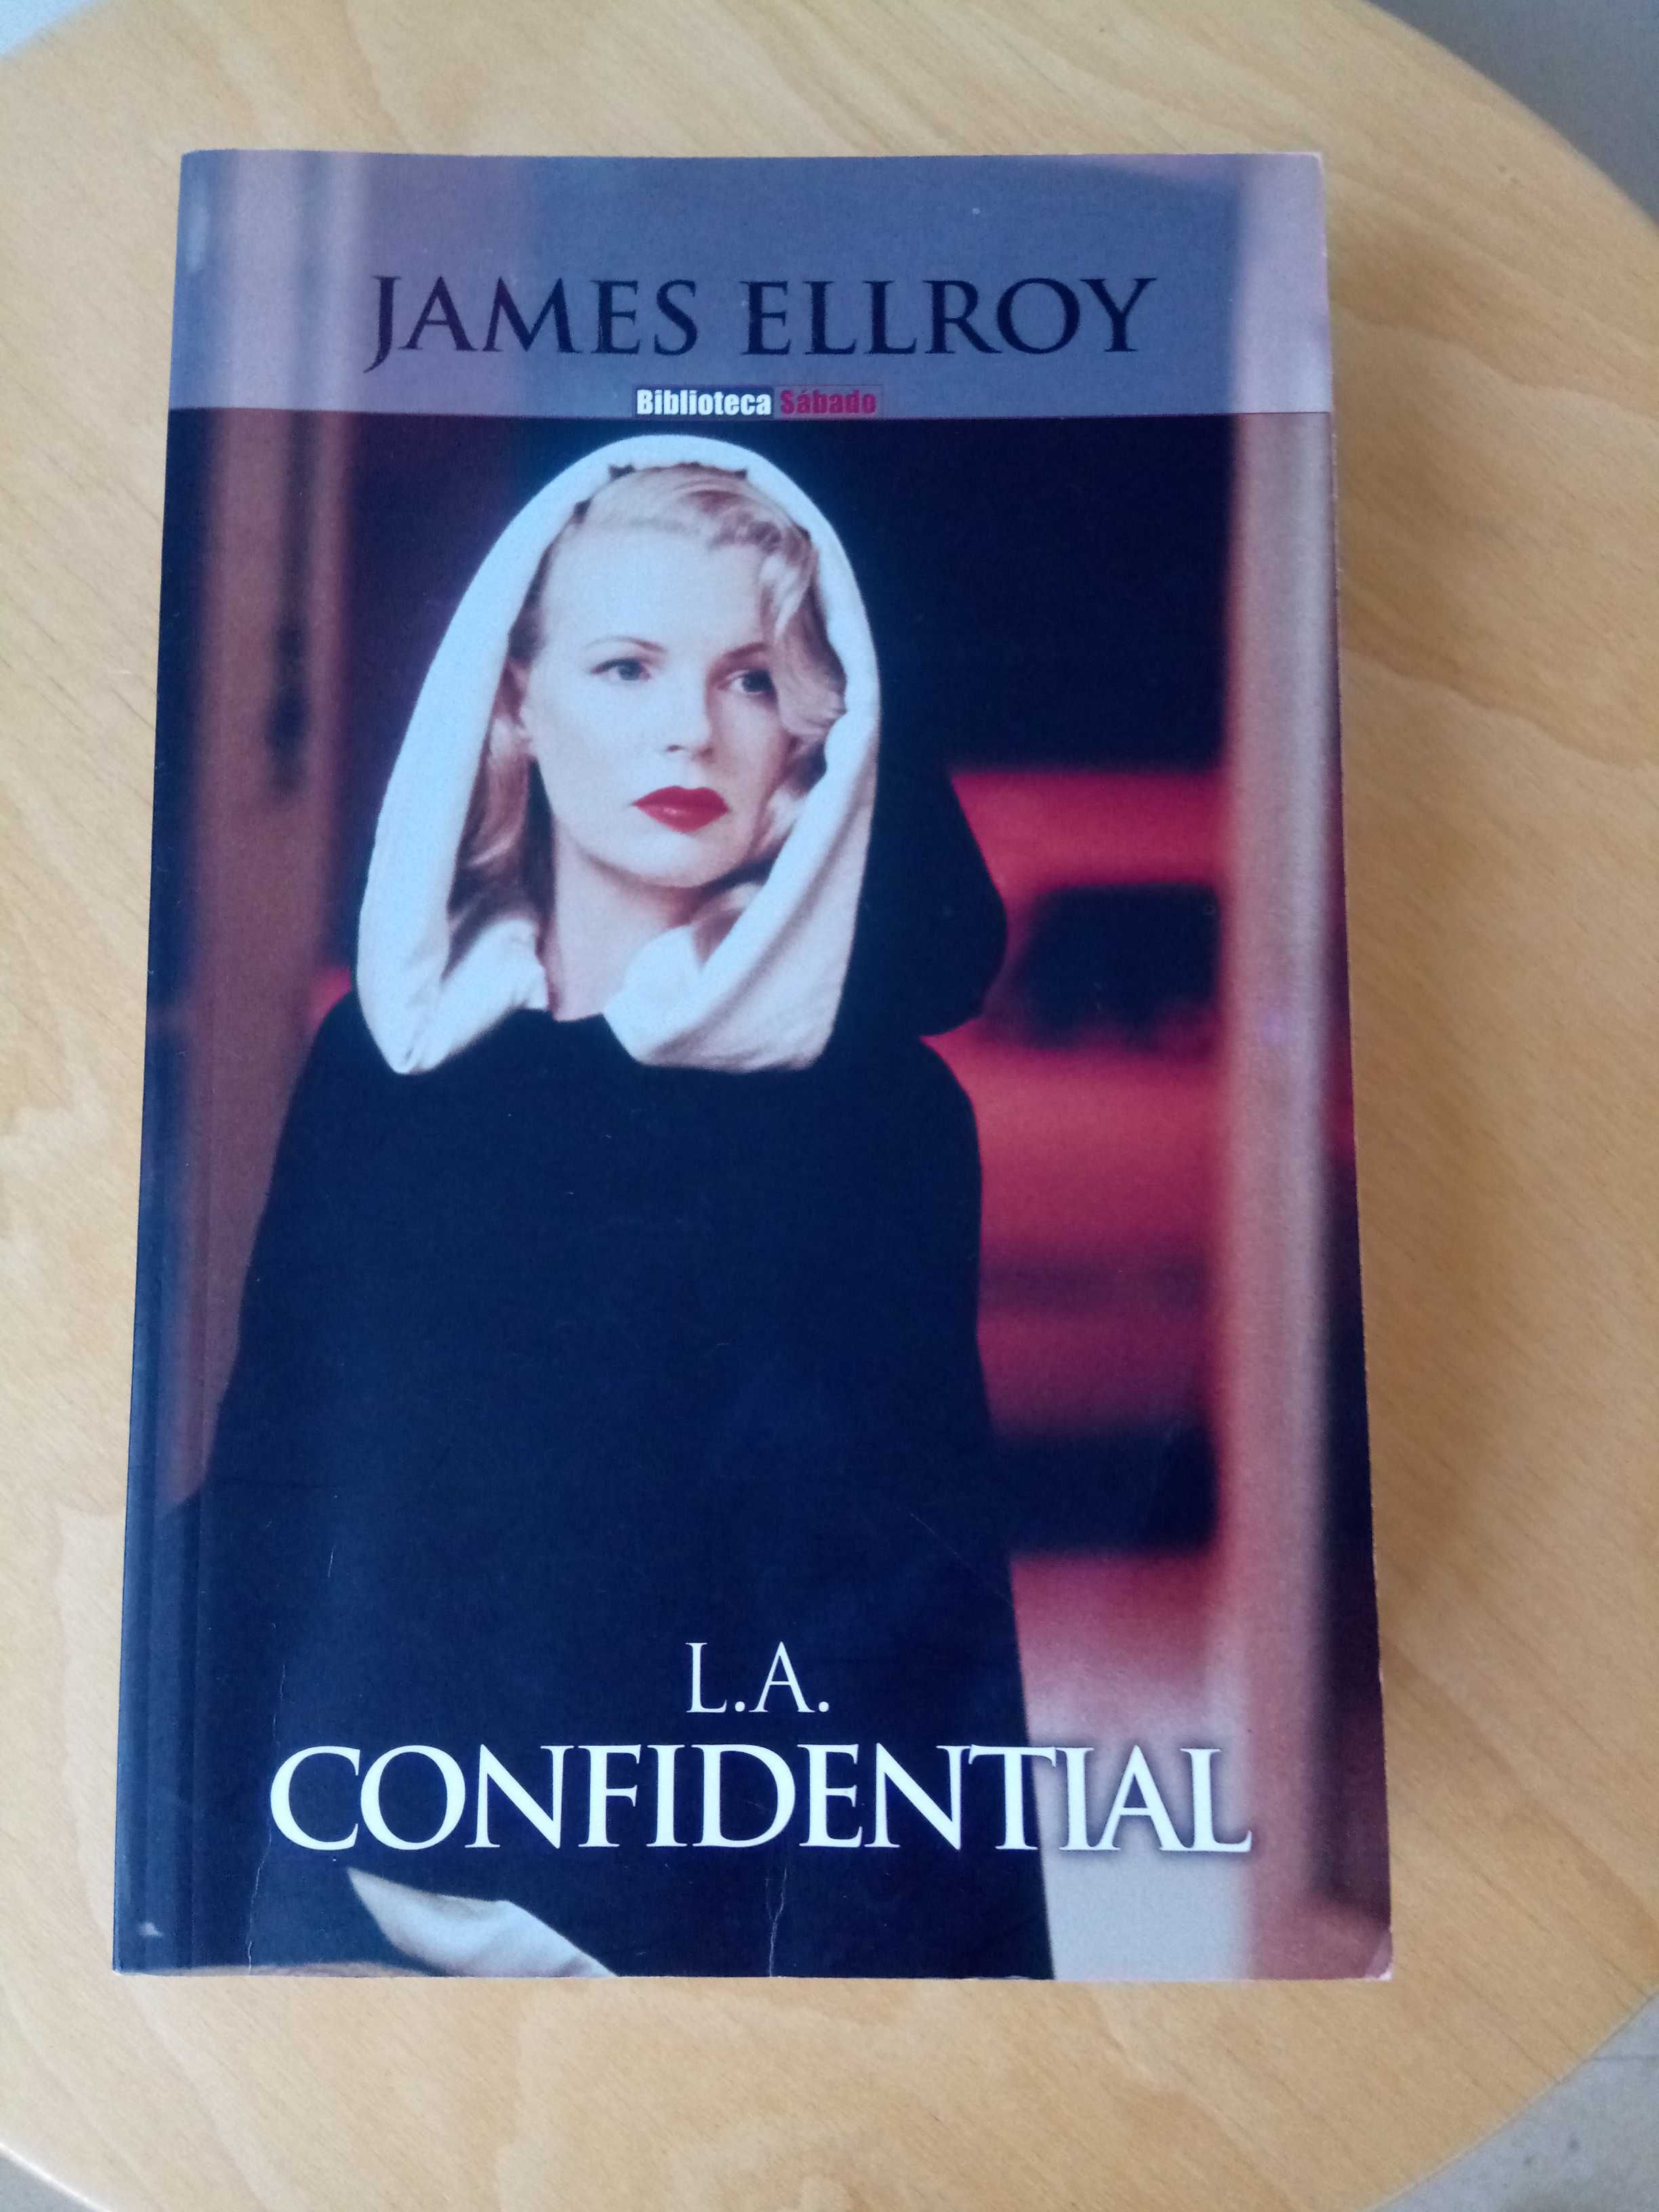 Livro "L.A. Confidential" James Ellroy